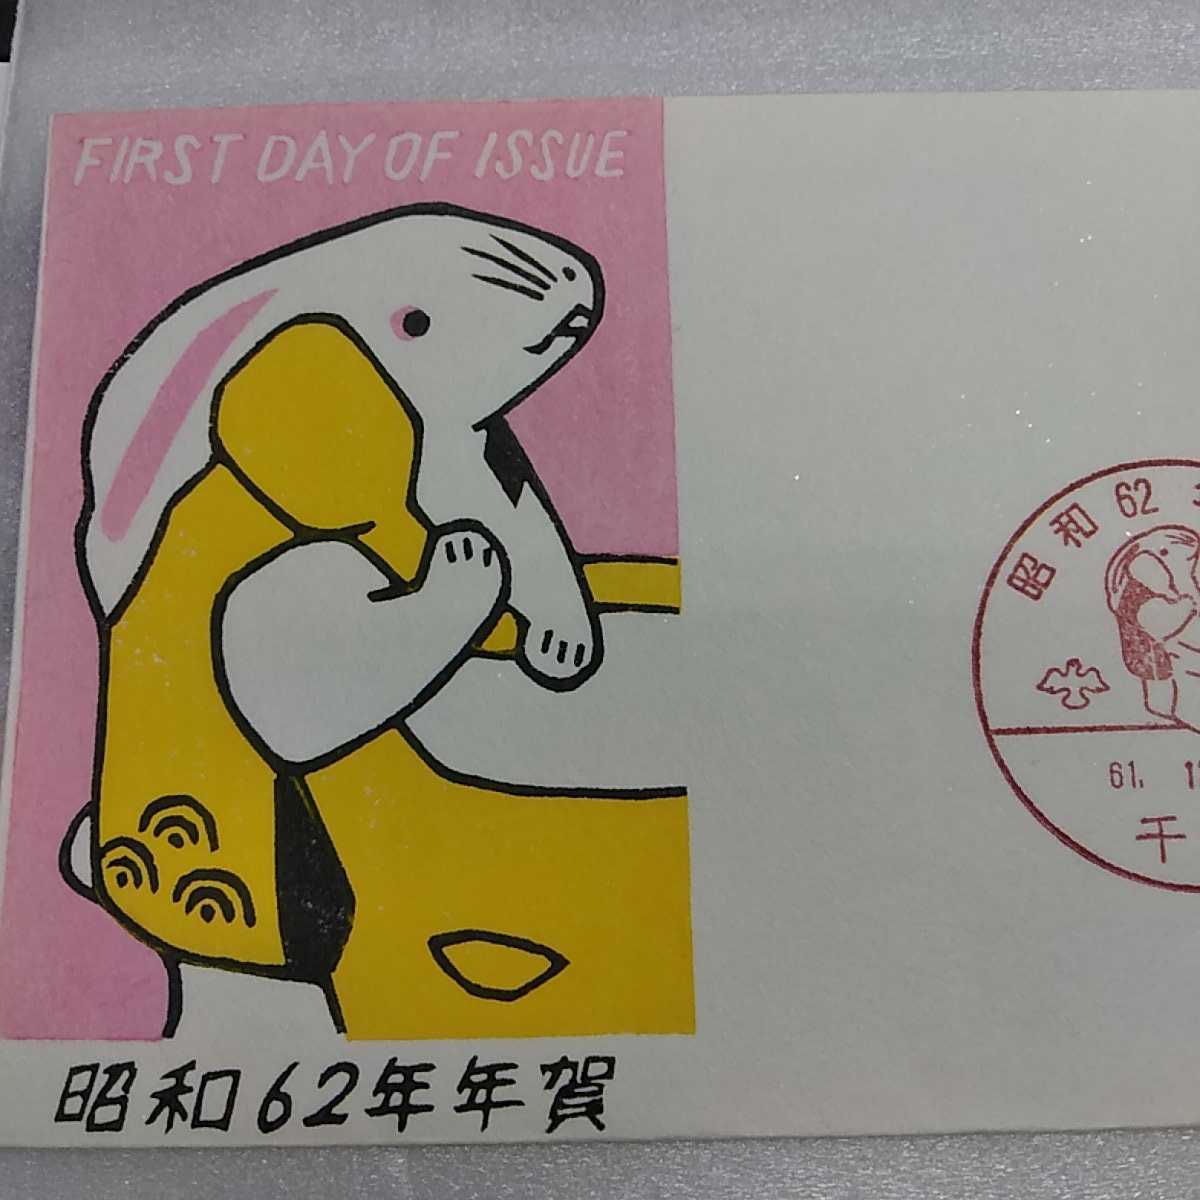 6　... день крышка 　First day Cover1000 вид   почта  　 Сёва 62 год  год ... почта  марка  　40  йен  марка  　1987 год  год ... марка  